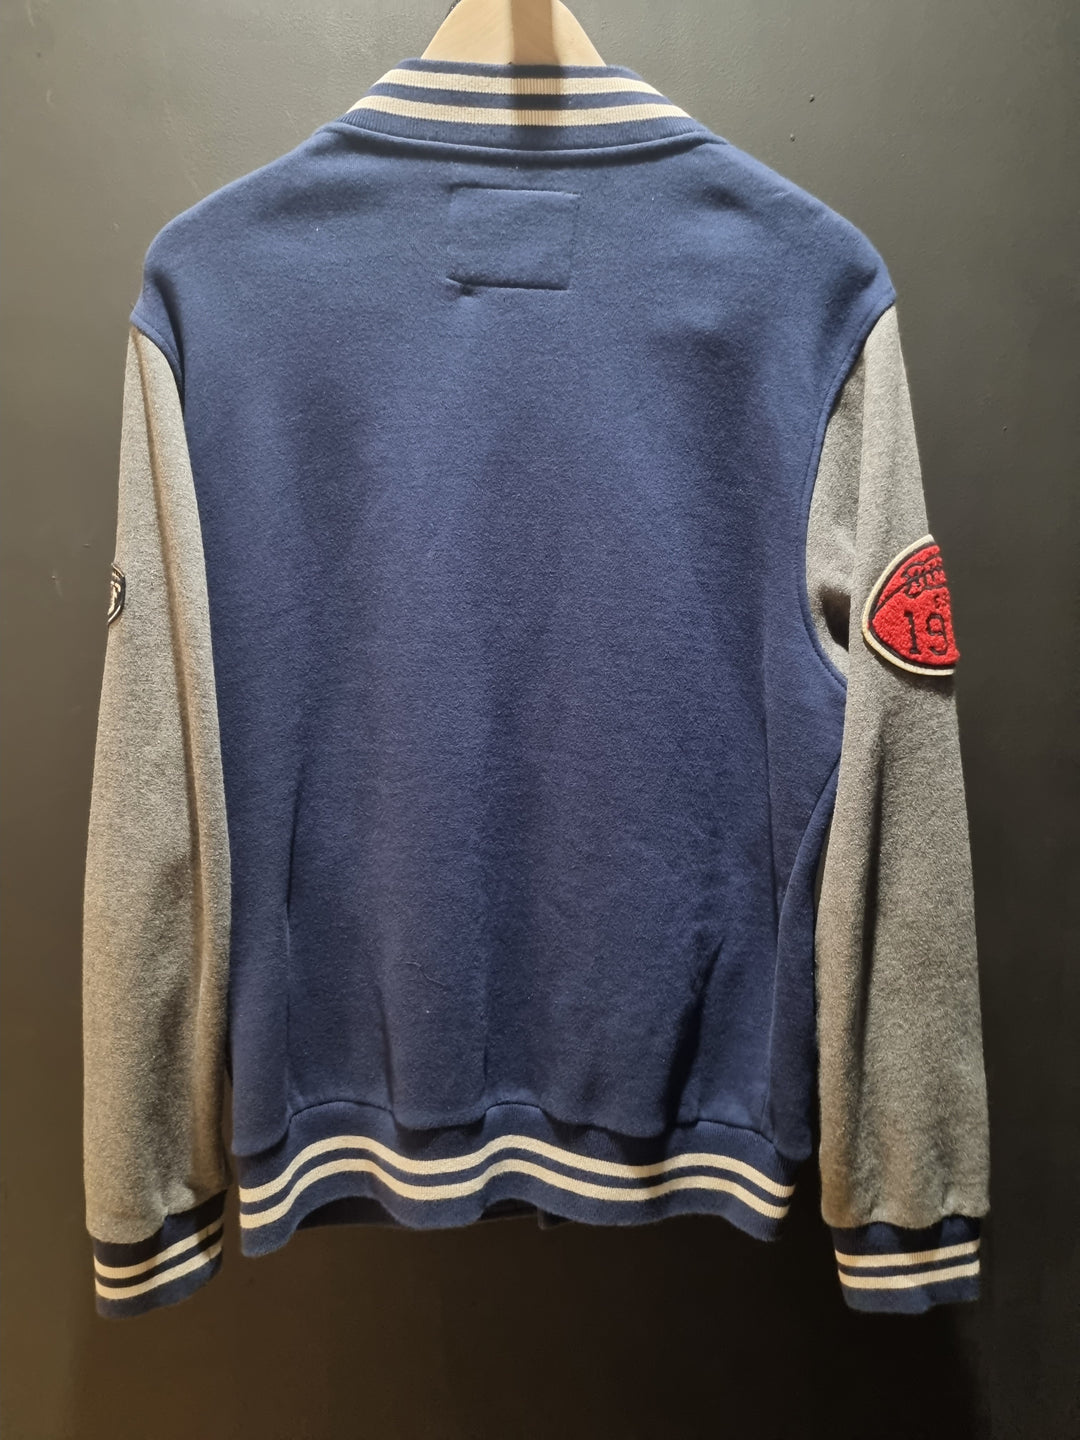 NFL Patriots 1960 Varsity Jacket Medium